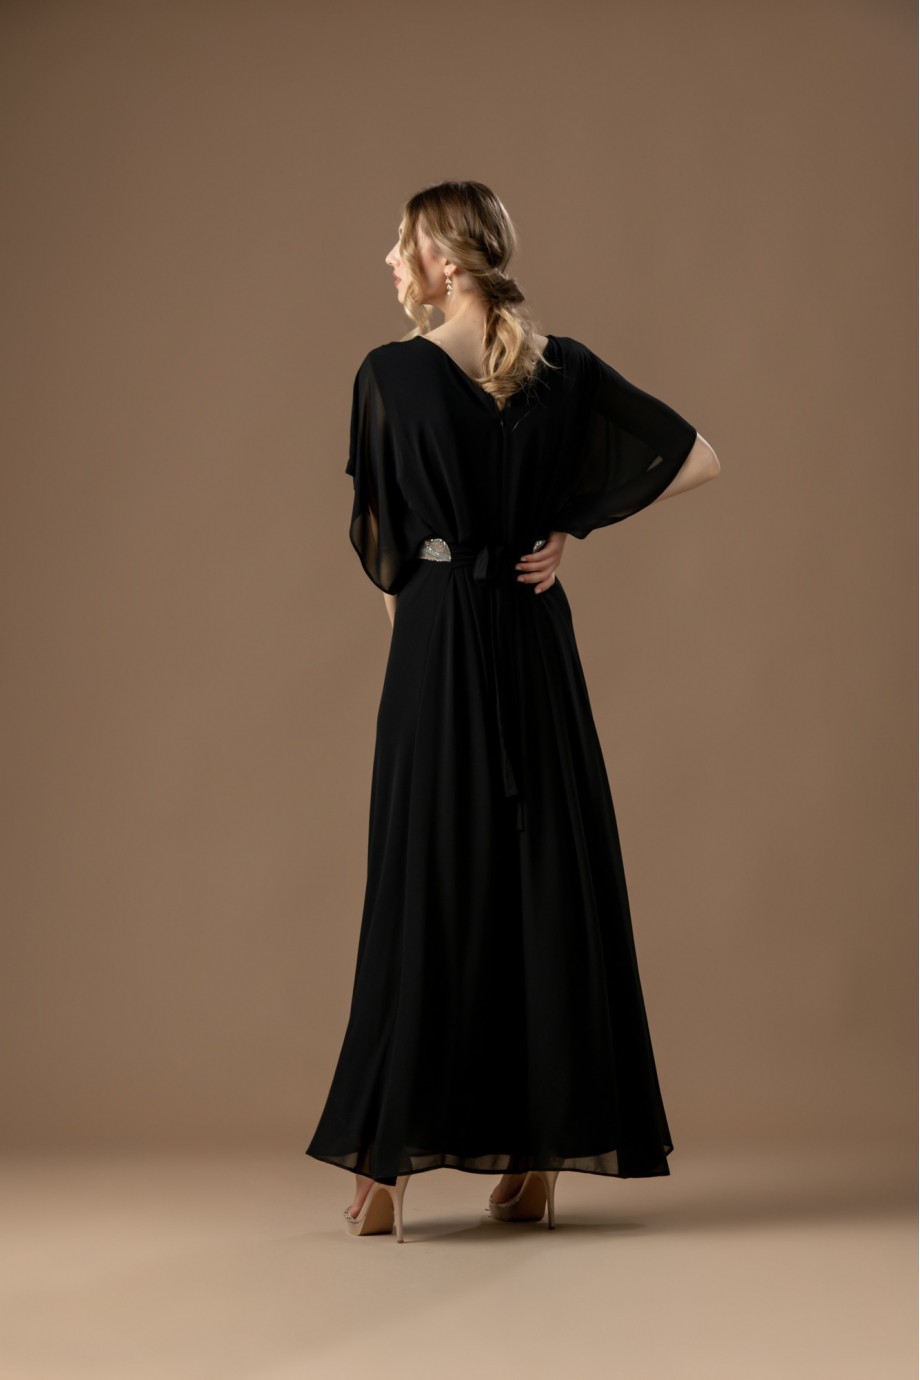 Μακρύ μαύρο φόρεμα με ασημί κέντημα στο μπούστο